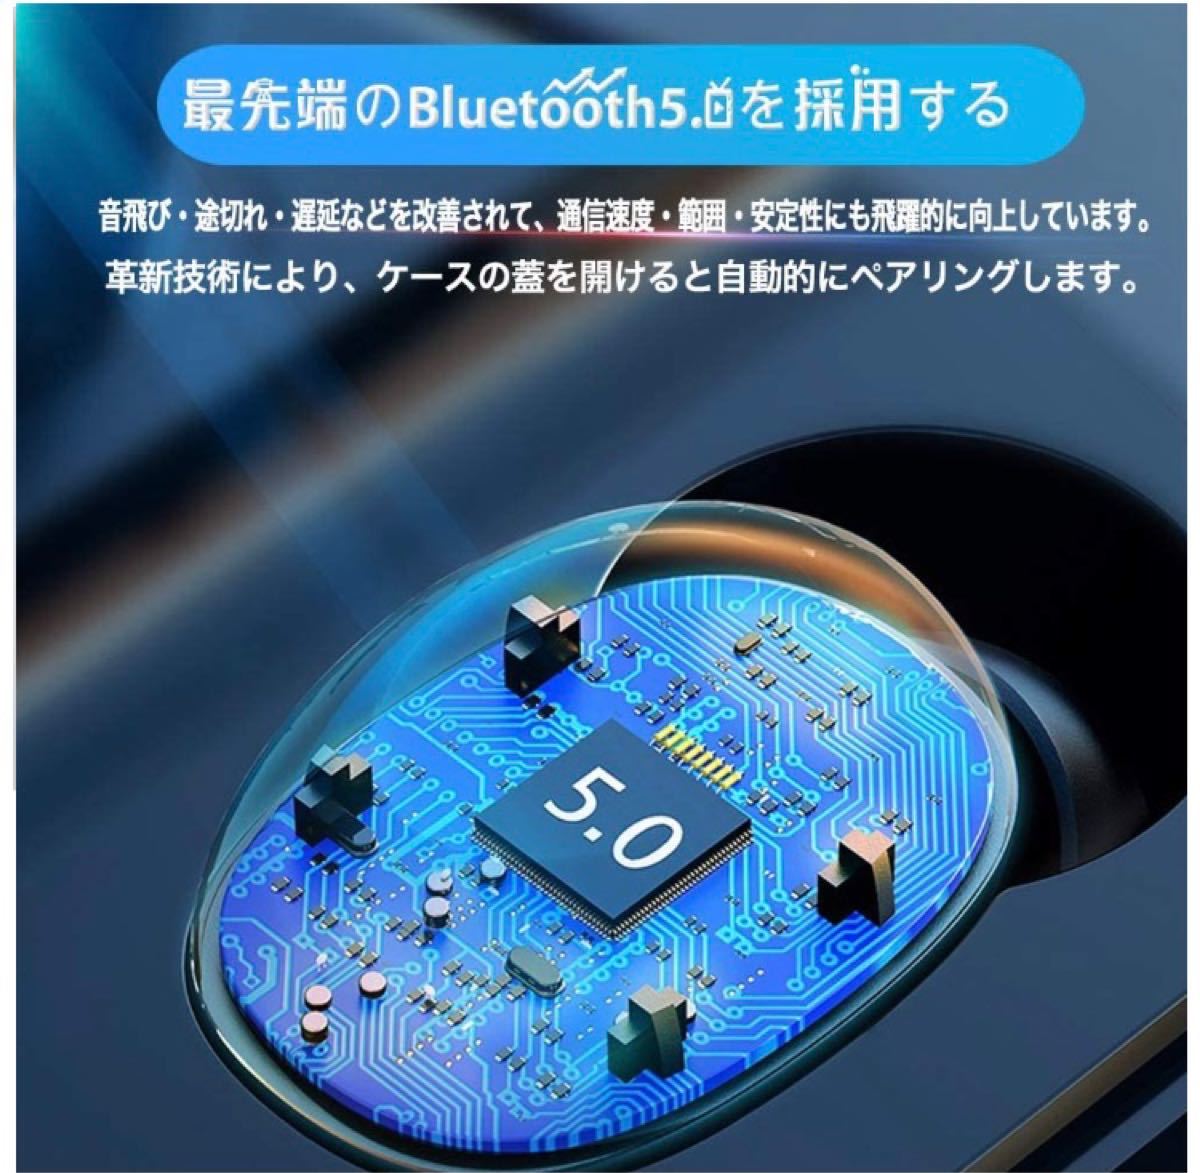 Bluetooth イヤホン ワイヤレスイヤホンBluetooth5.0第二世代